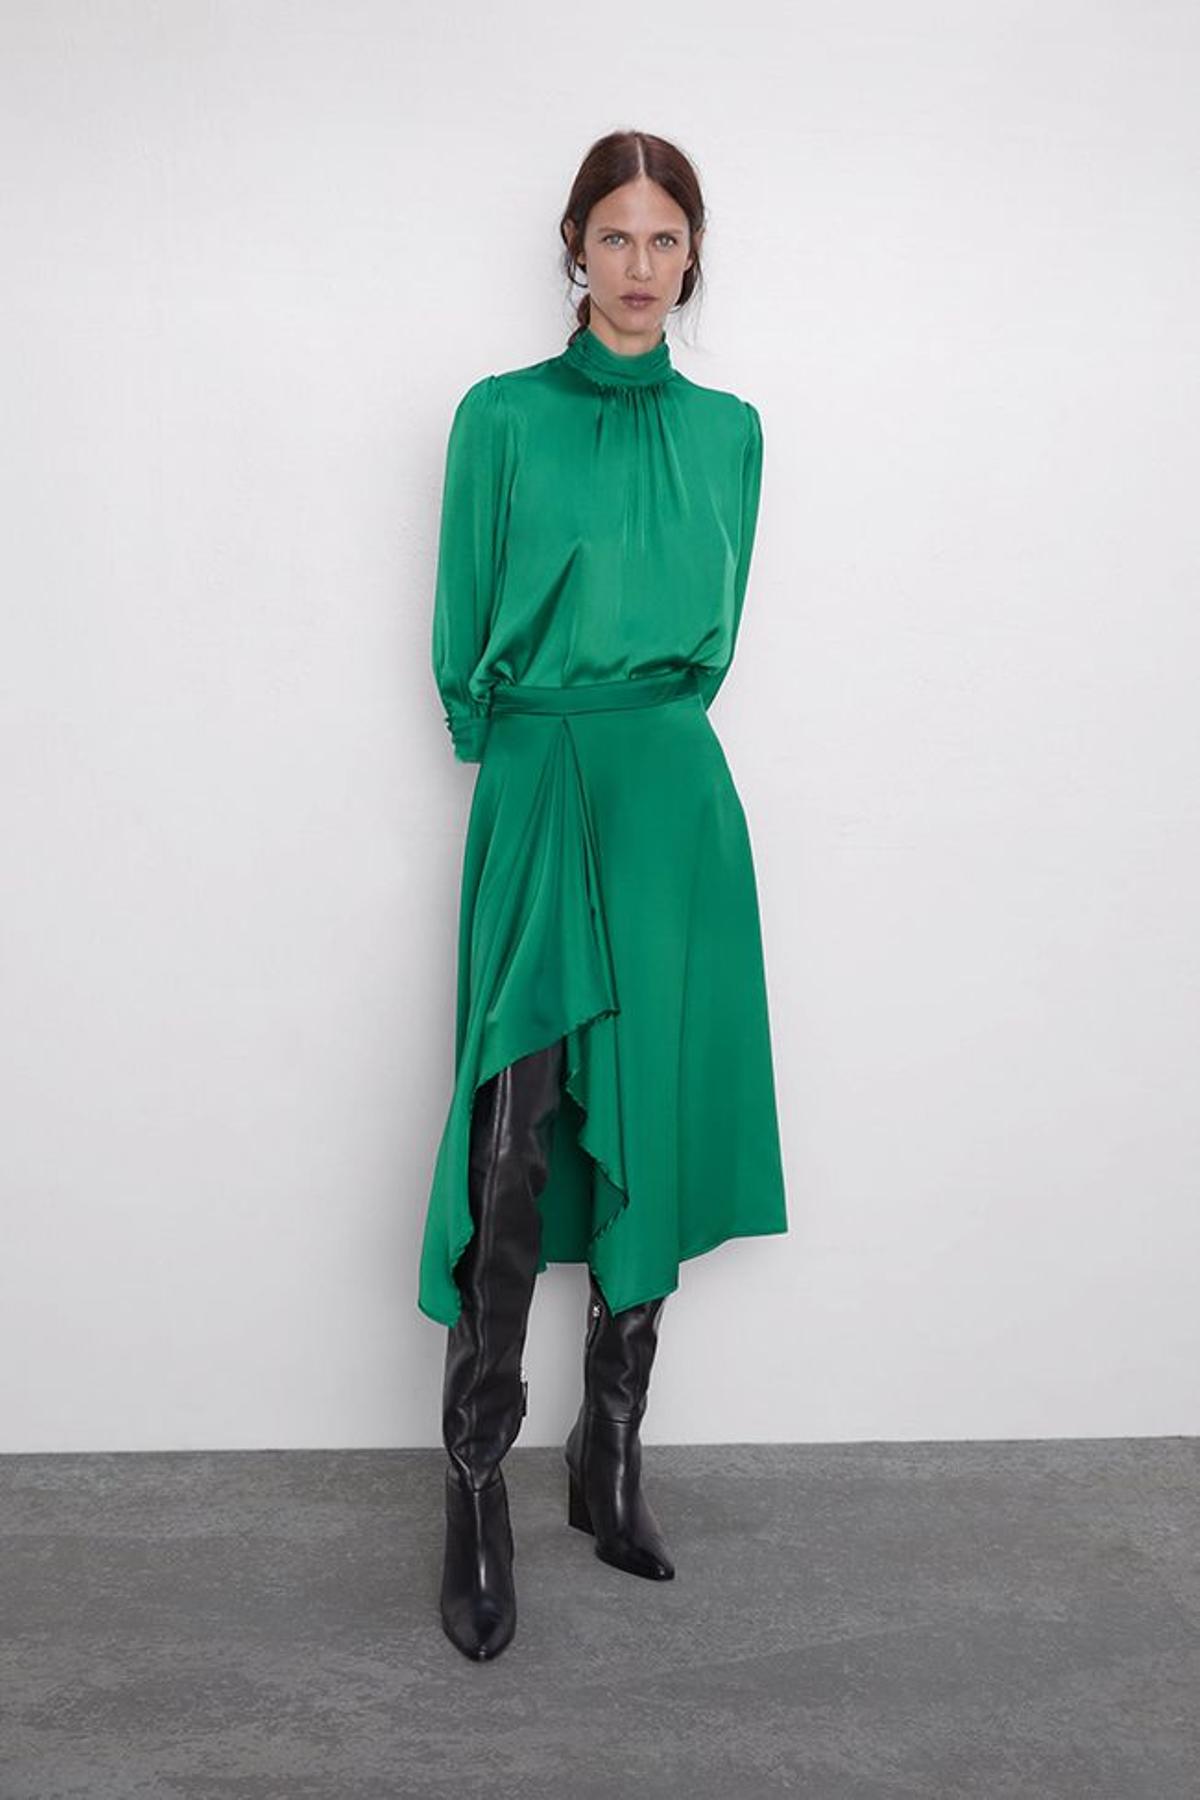 Conjunto formado por blusa de cuello alta y falda asimétrica de satén verde, de Zara